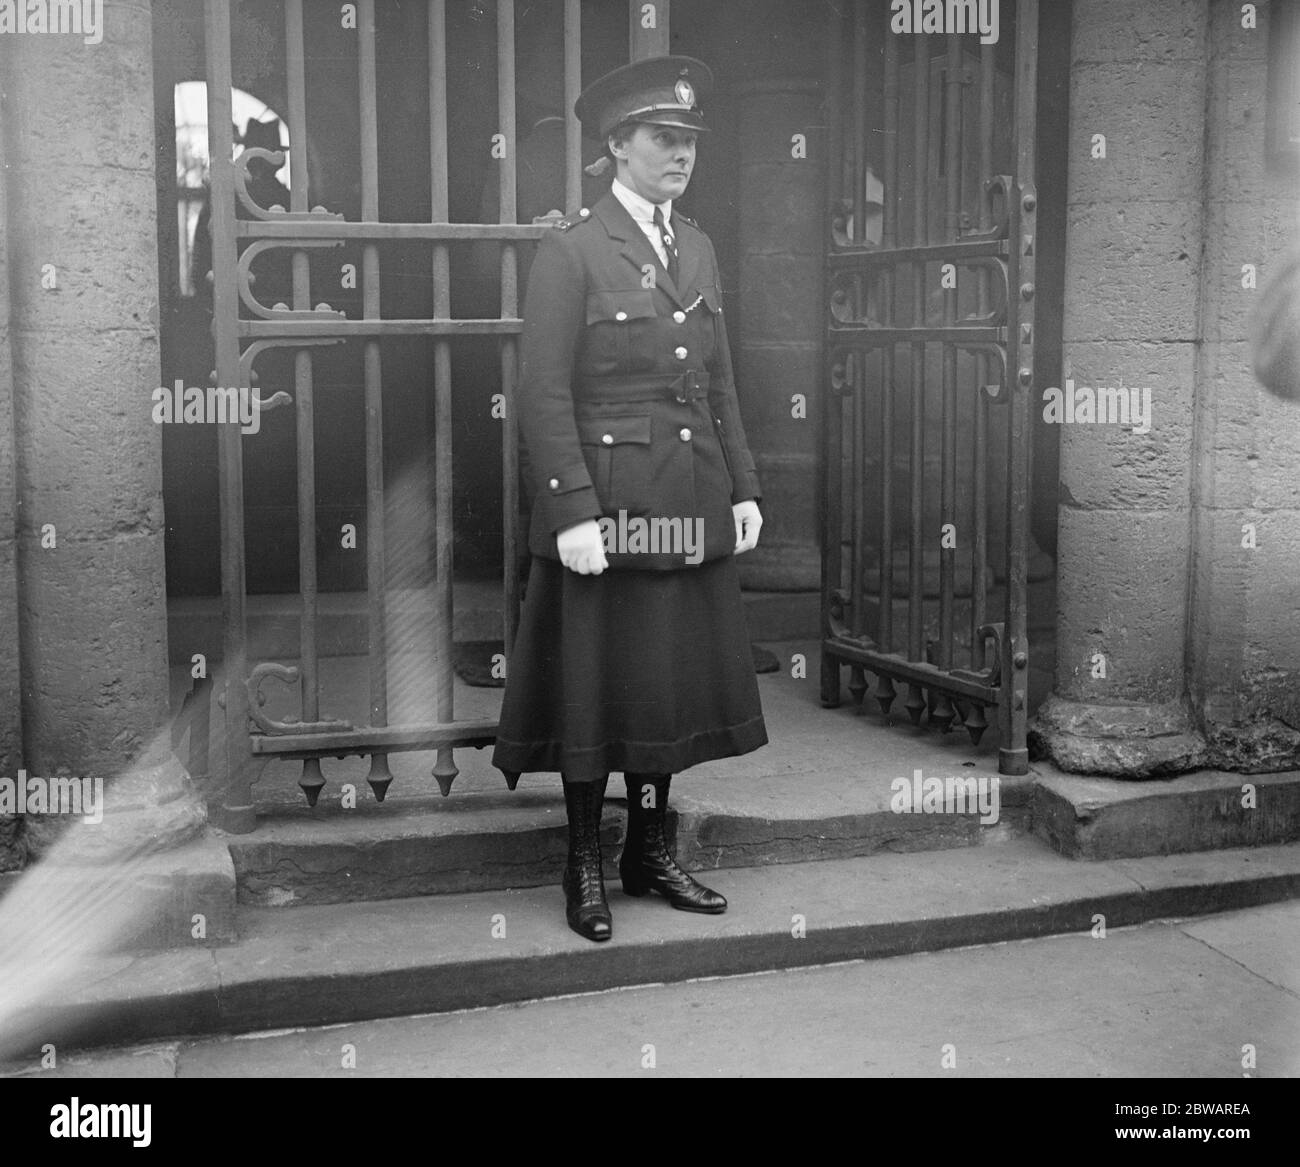 L'accusateur de Mme Gooding inculpé: Mlle Gladys Moss , la policewoman mentionnée dans l'affaire pour l'accusation 27 octobre 1921 Banque D'Images